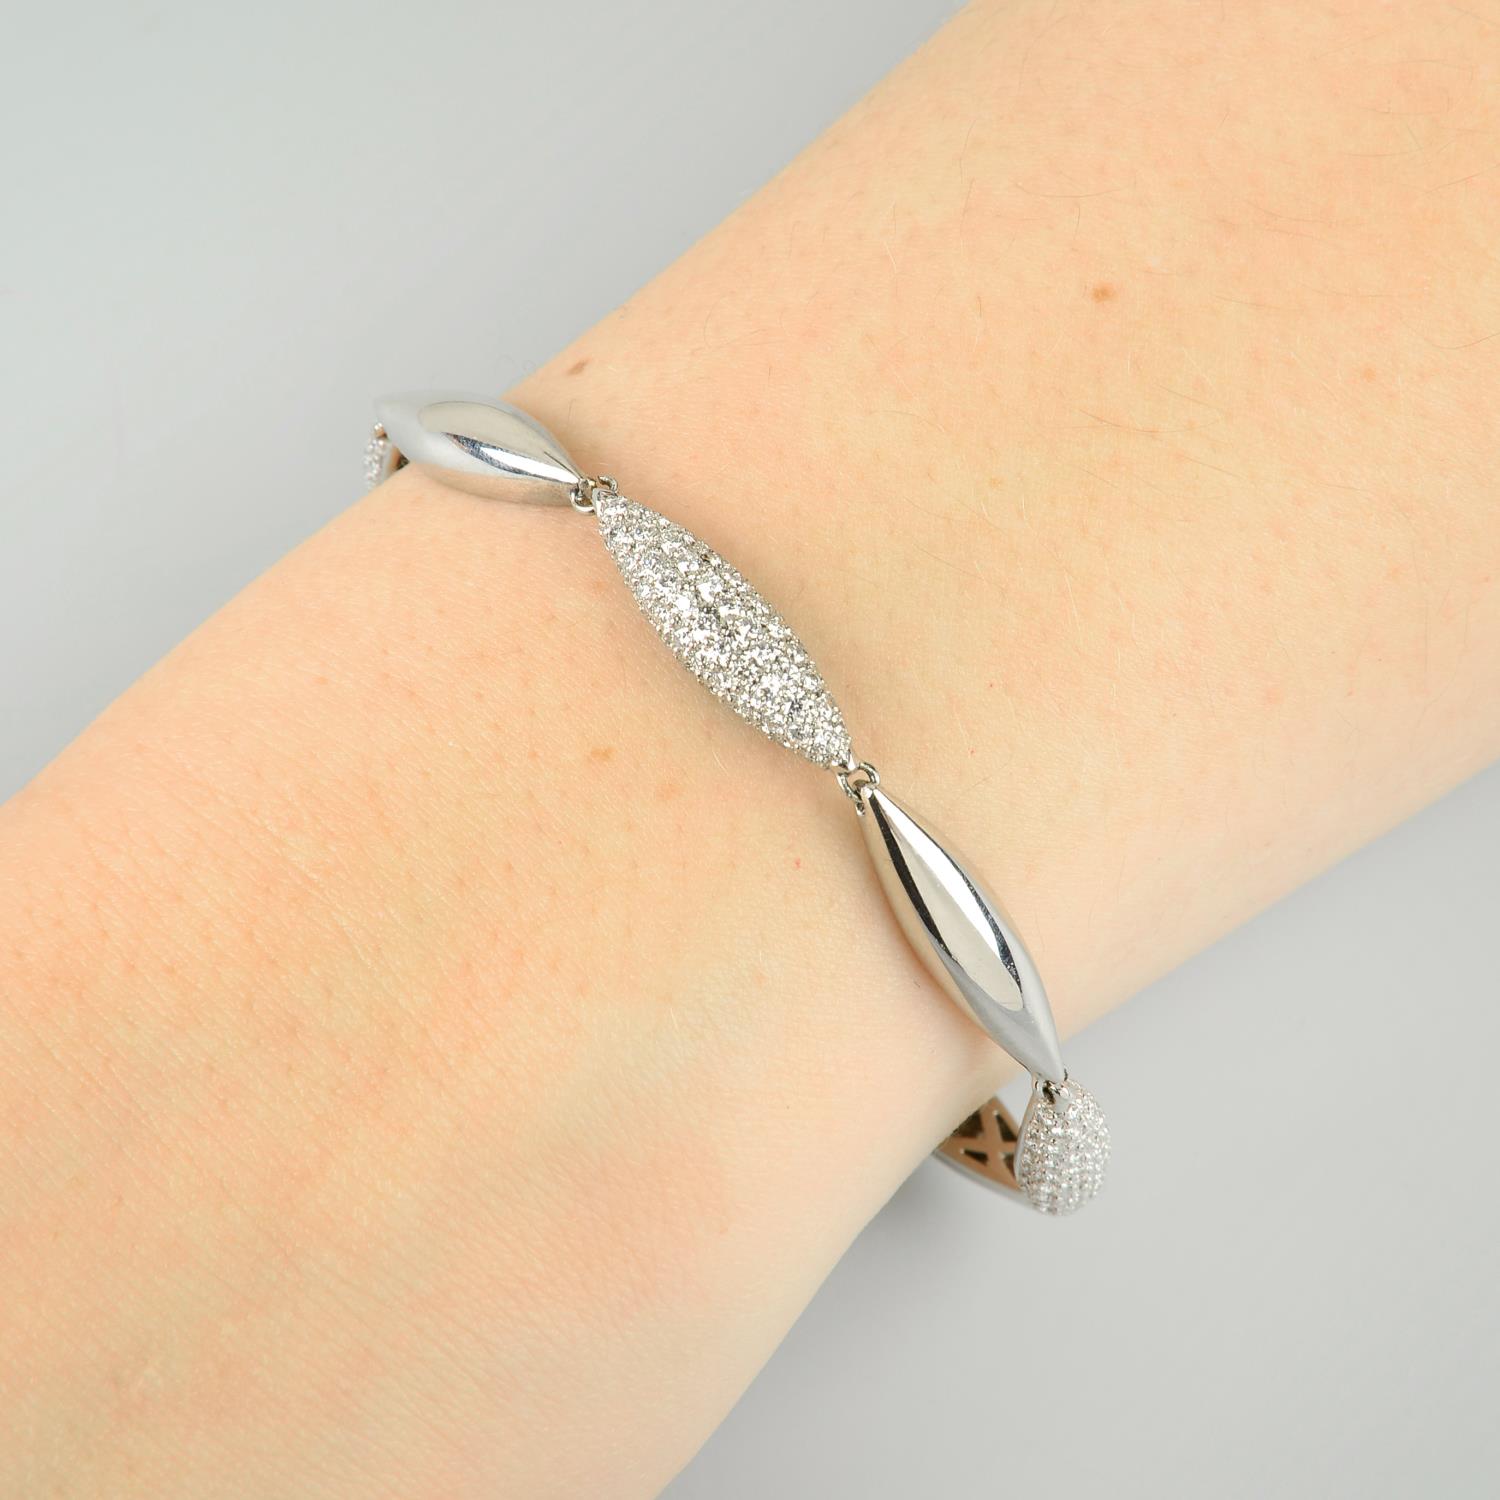 An 18ct gold pave-set diamond bracelet. - Image 5 of 5